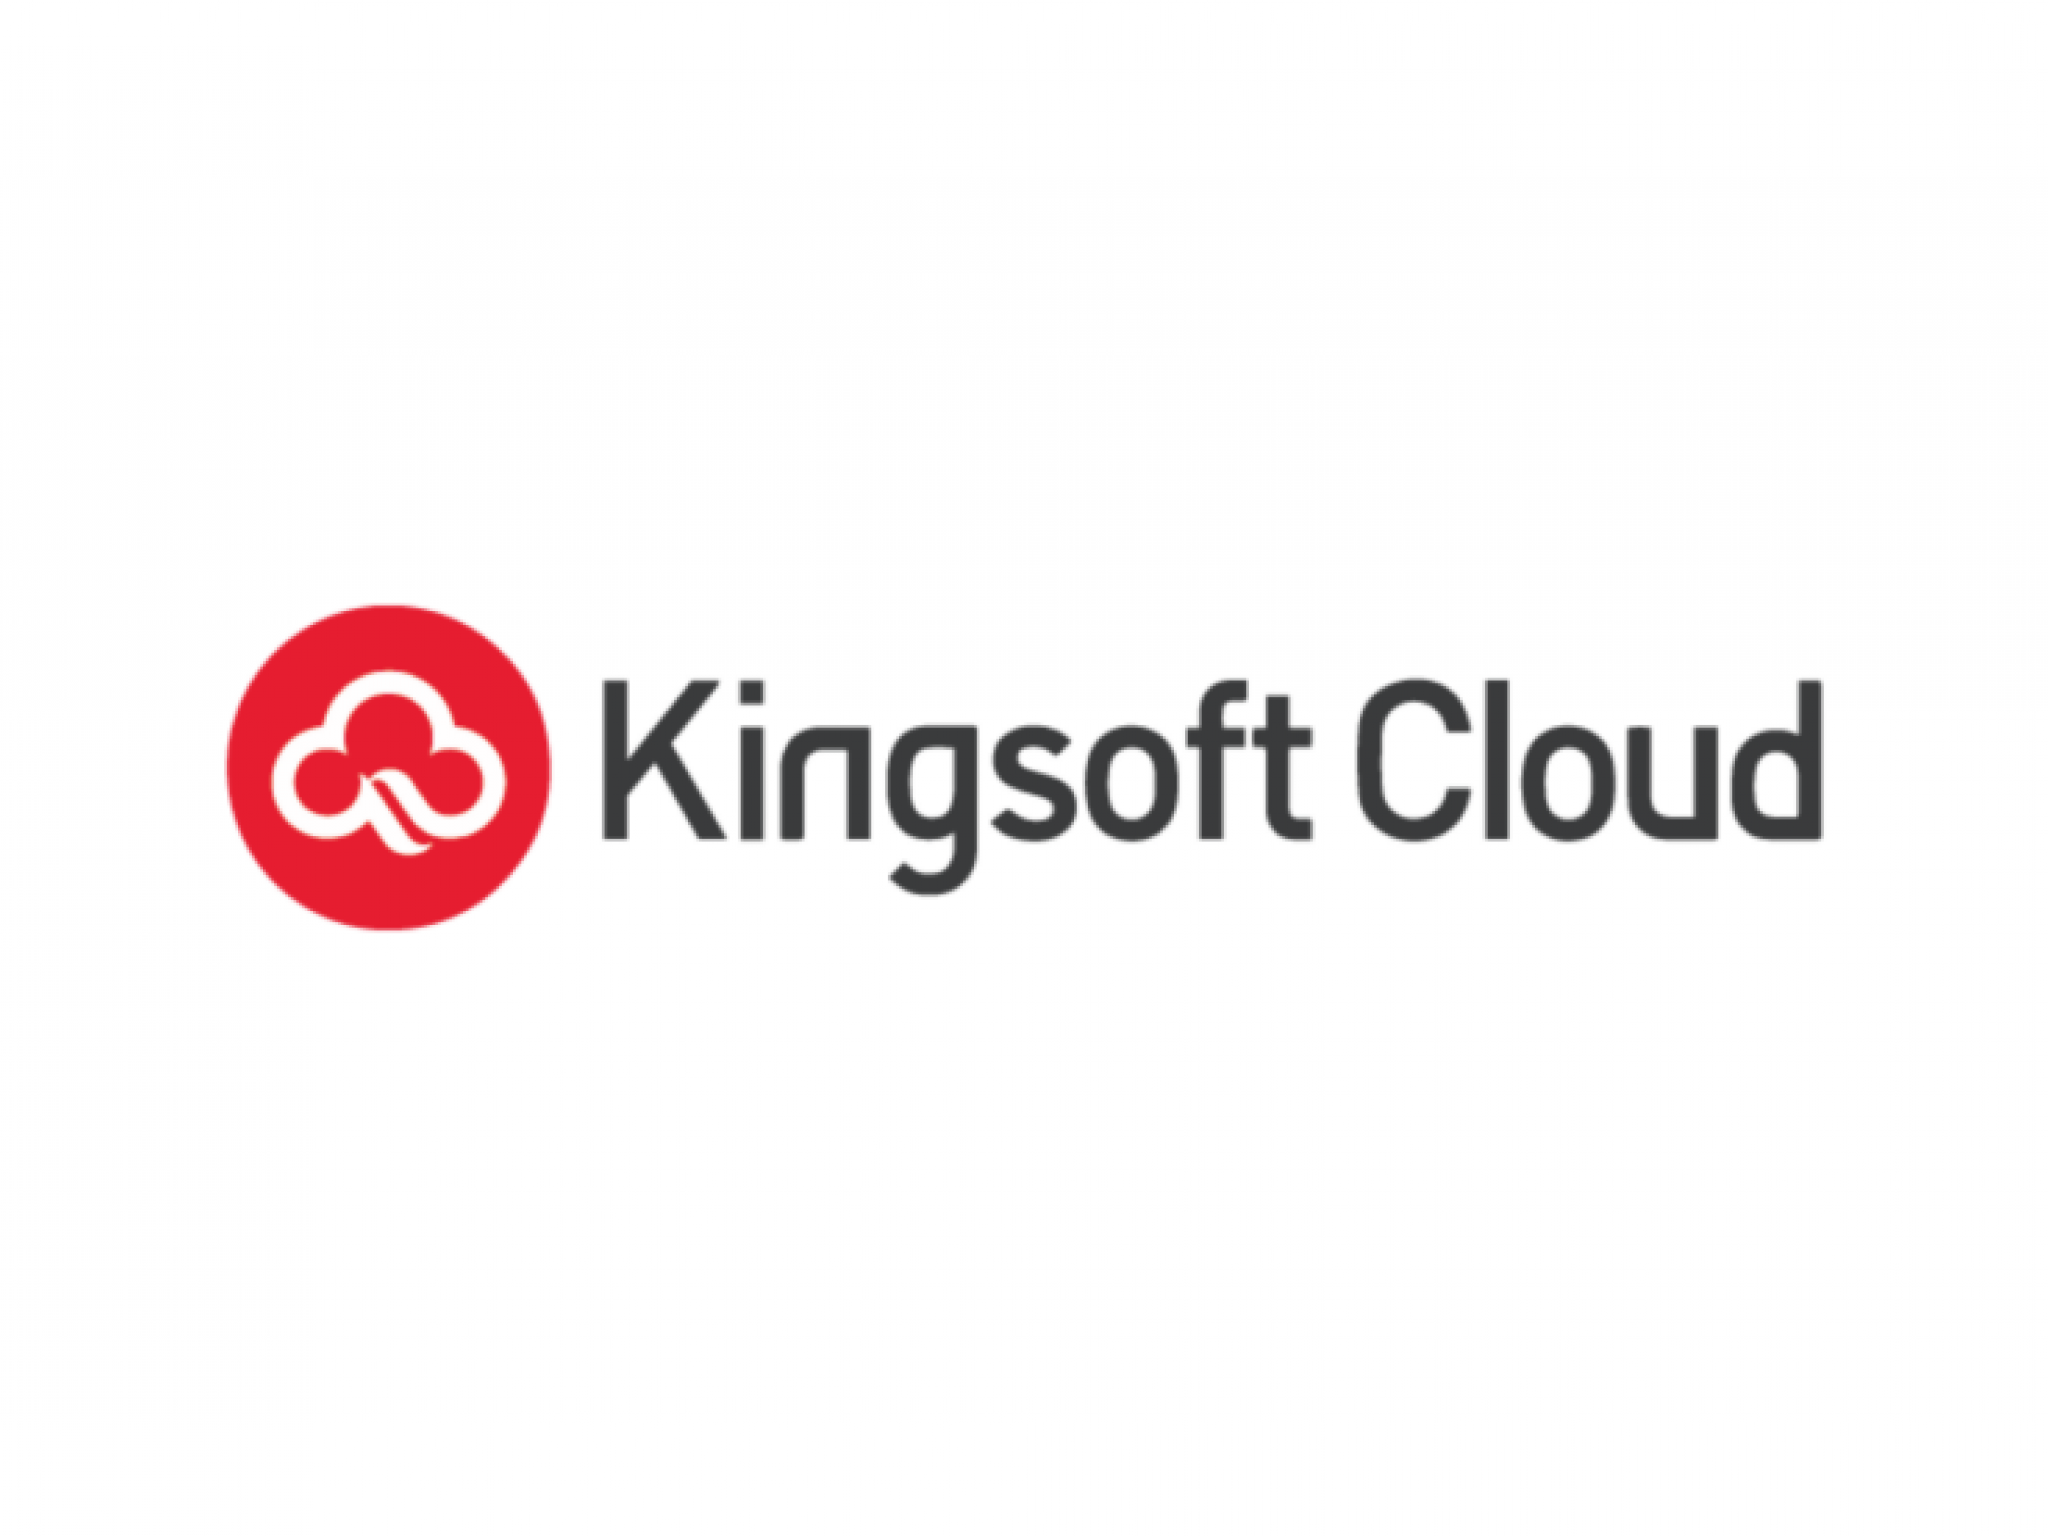  kingsoft-clouds-q1-revenue-dip-ai-demand-drives-public-cloud-growth-amid-enterprise-challenges 